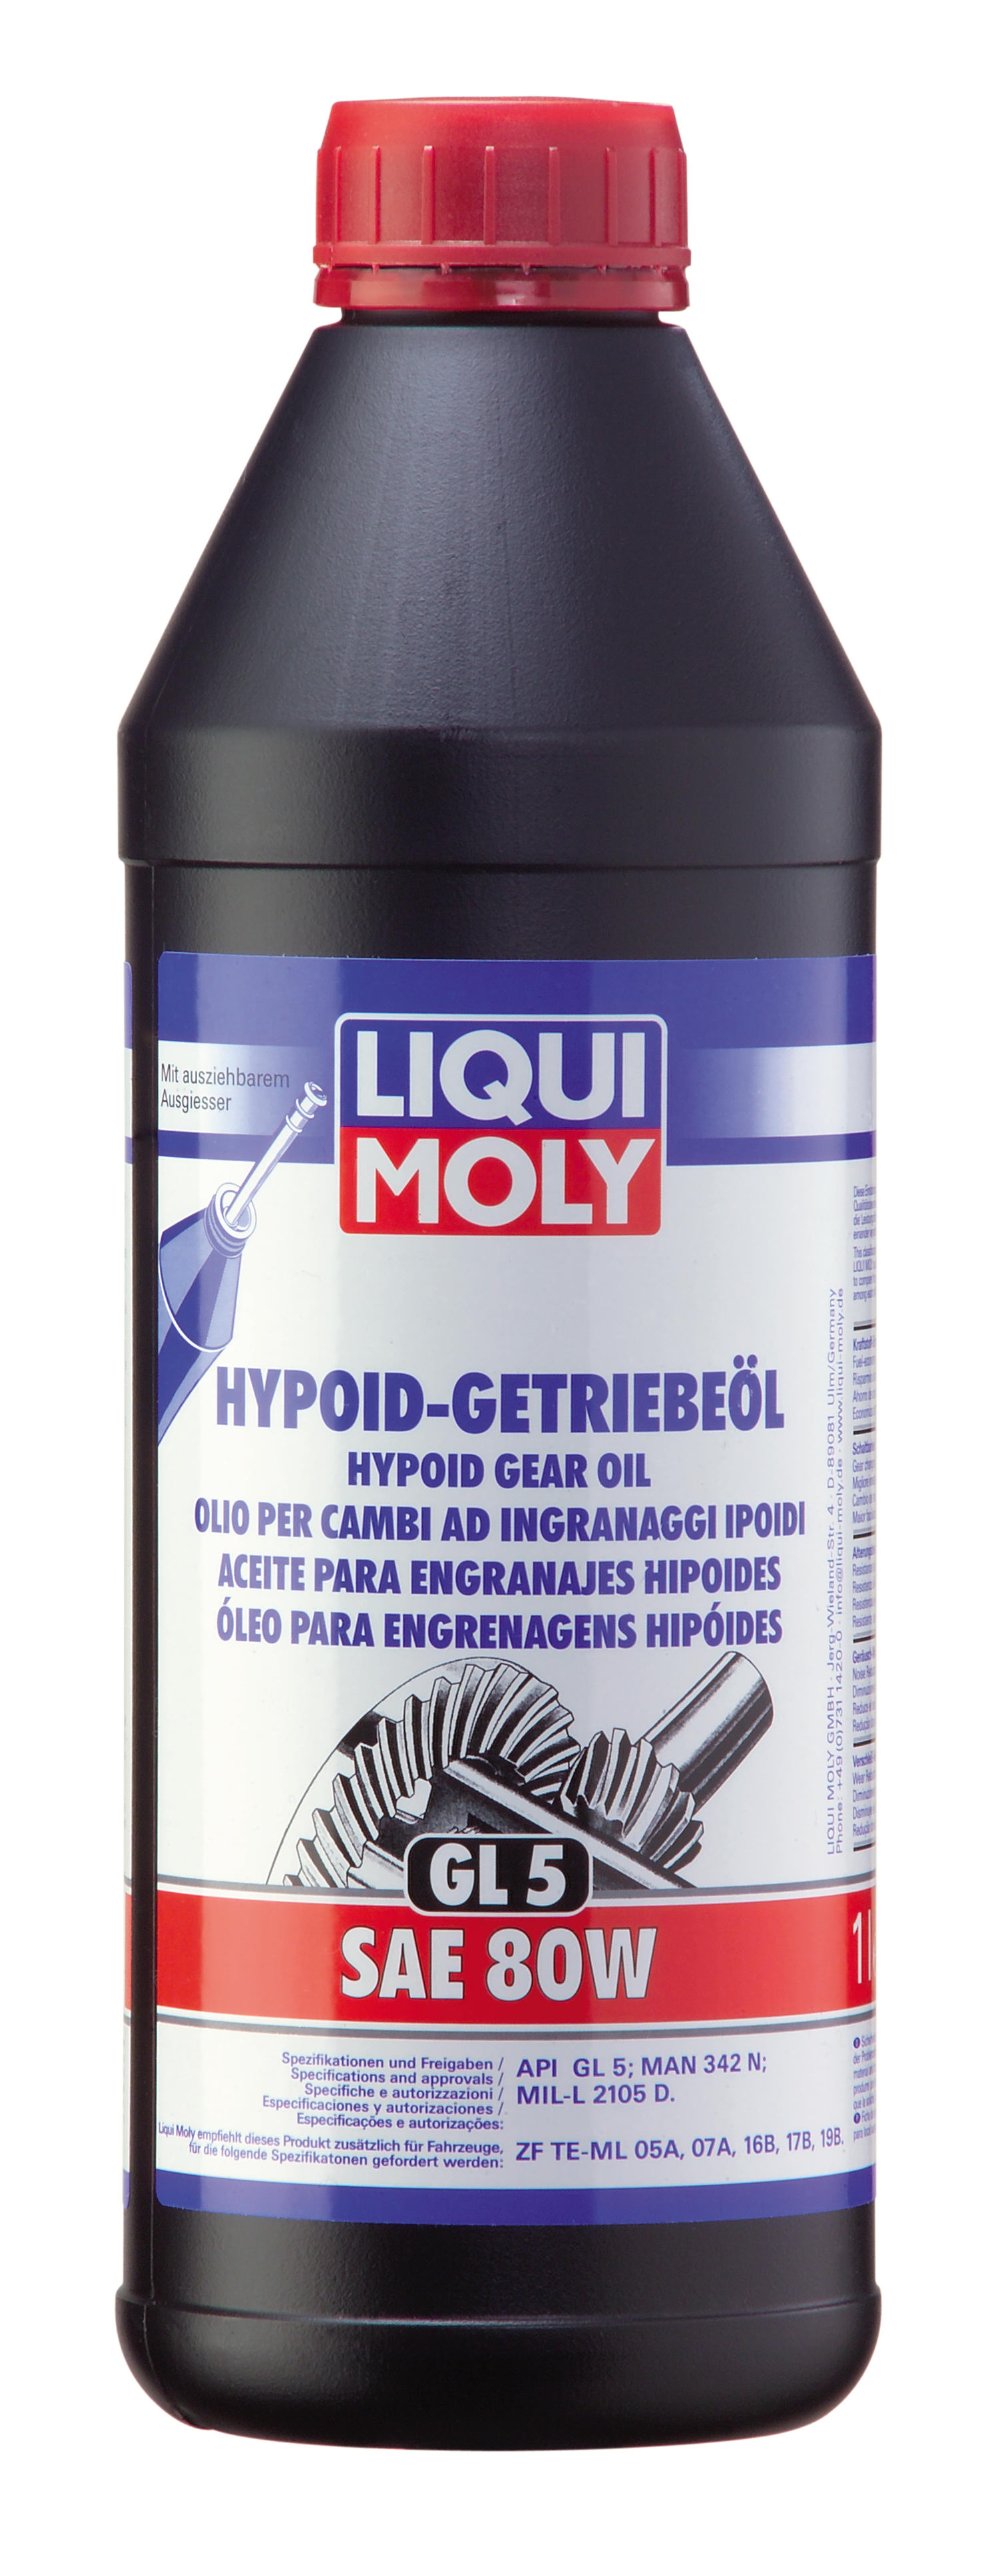 LIQUI MOLY Hypoid-Getriebeöl (GL5) SAE 80W | 1 L | Getriebeöl | Hydrauliköl | Art.-Nr.: 1025 von Liqui Moly